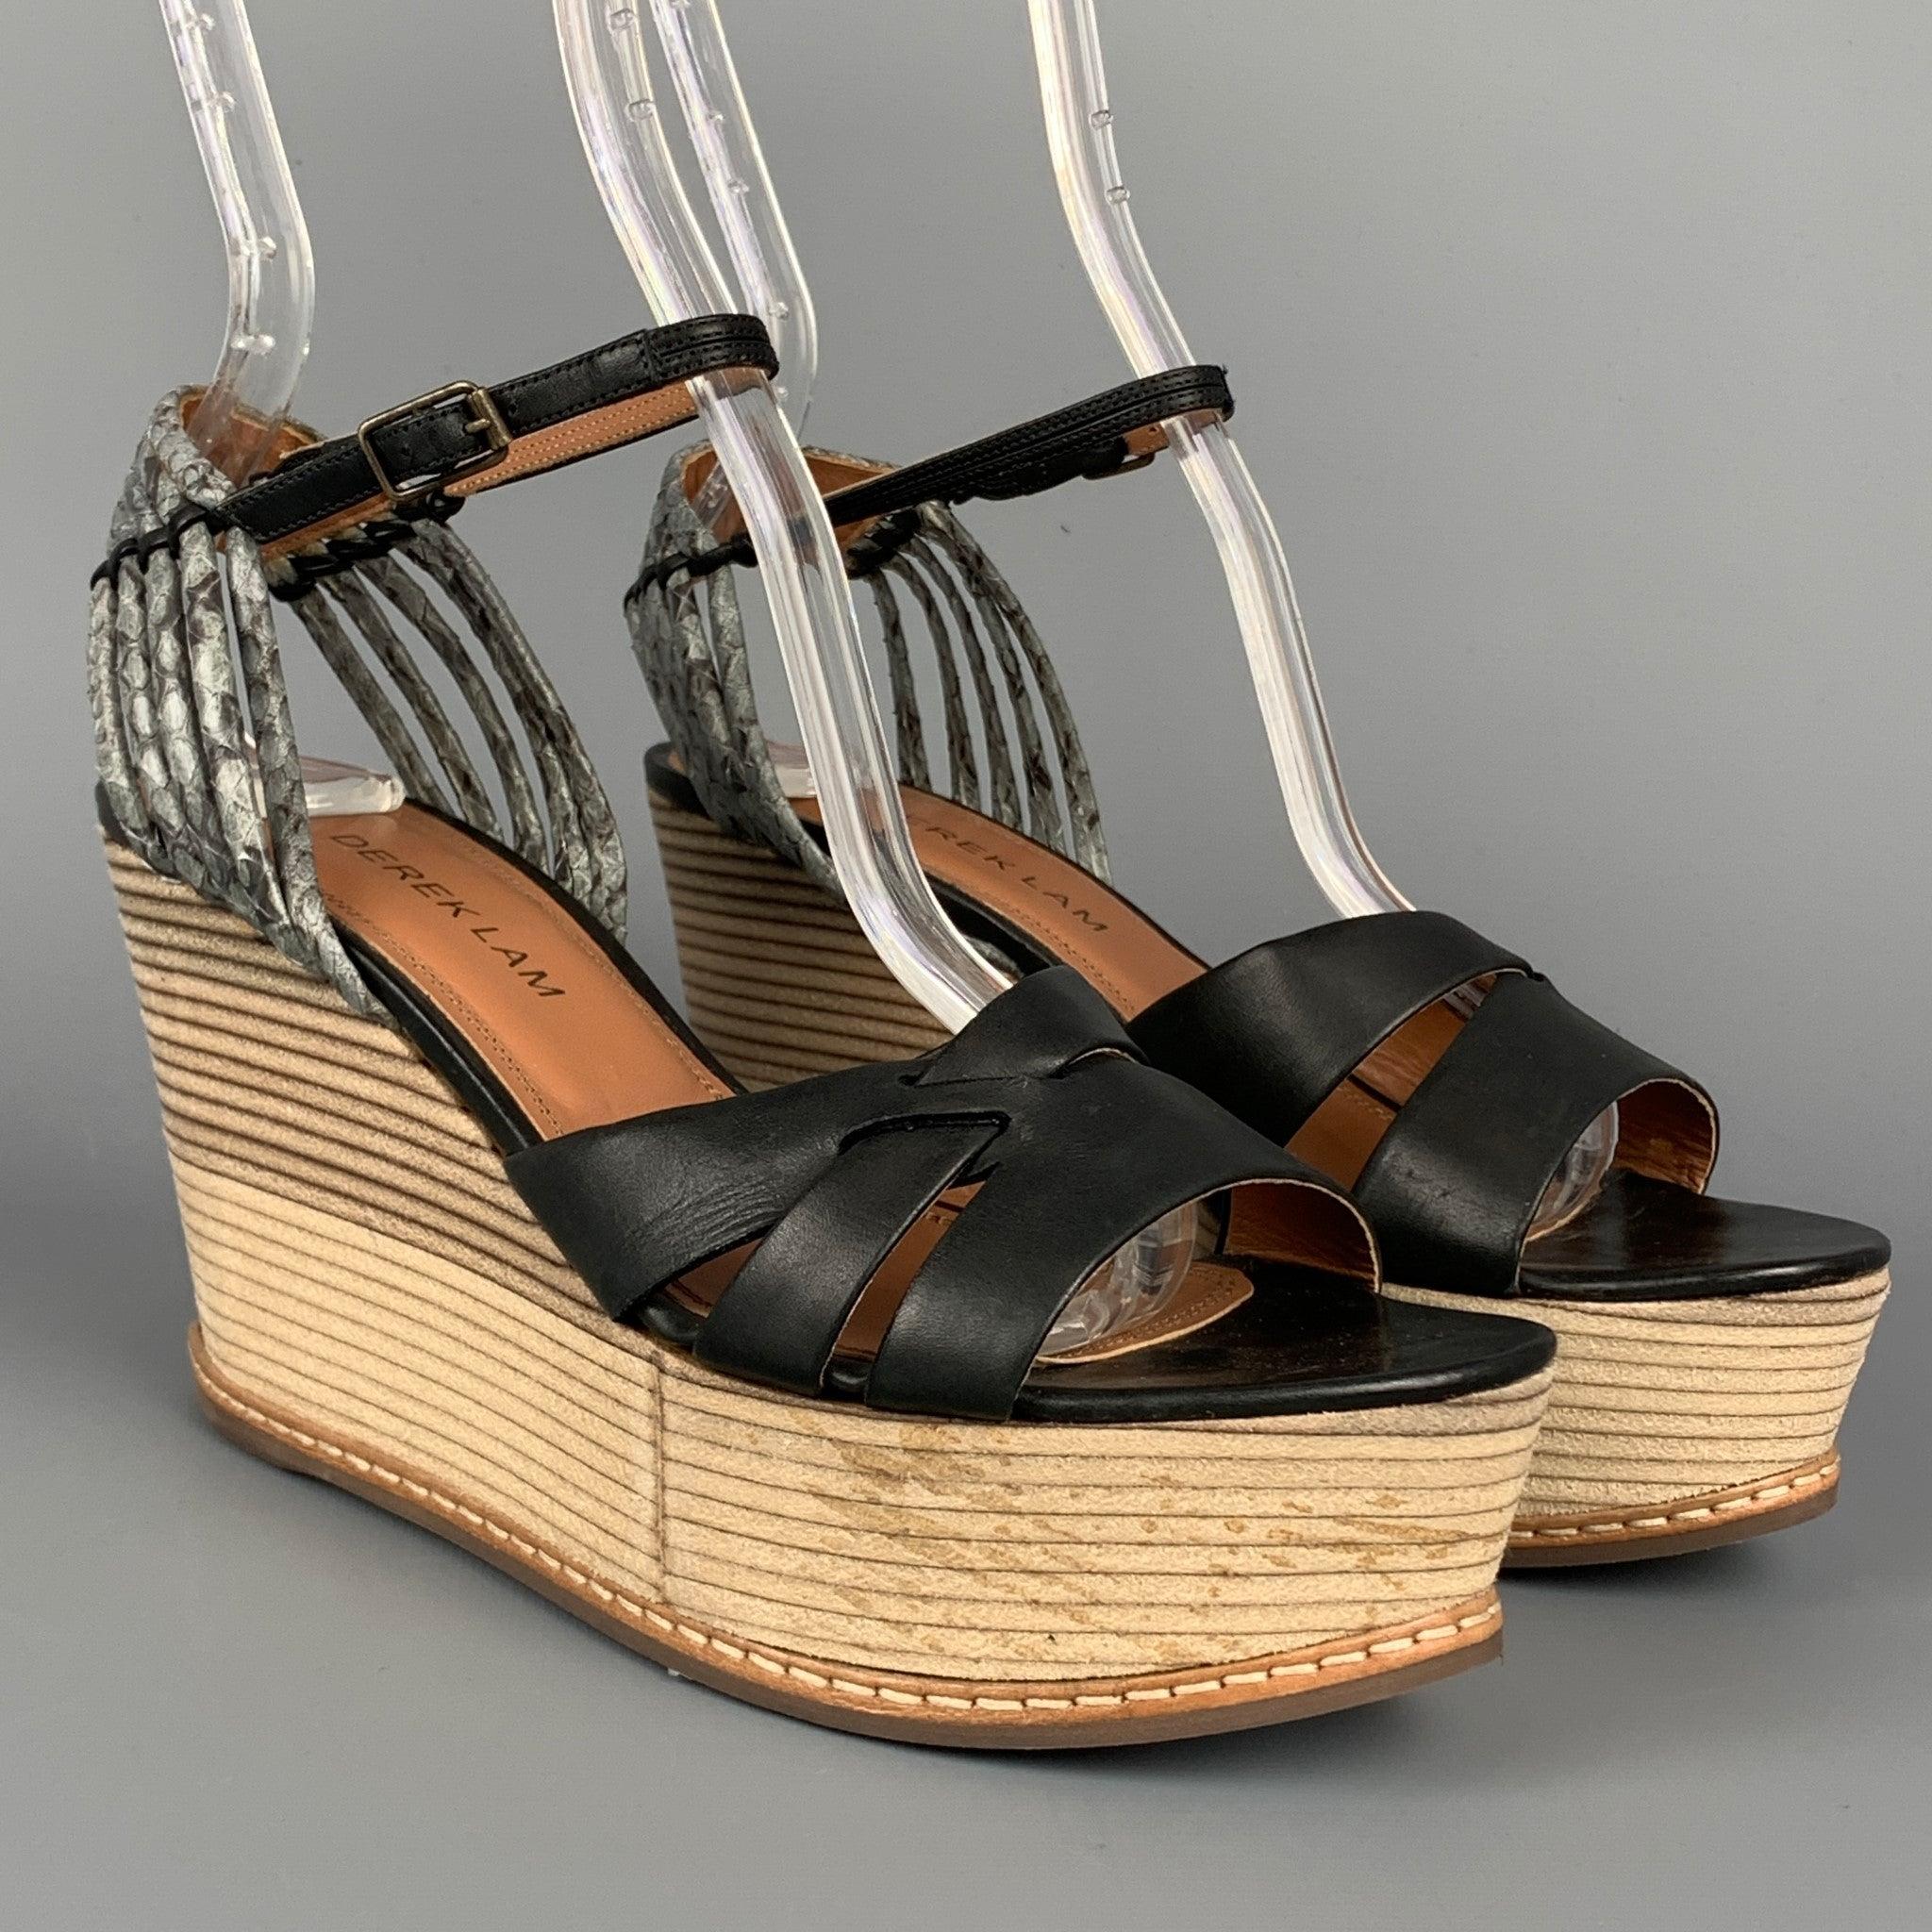 Les sandales DEREK LAM sont en cuir noir et beige et sont dotées d'une bride à la cheville et d'un talon compensé en bois. Fabriqué en Italie.
Etat d'occasion. 

Marqué :   UE 36 

Mesures : 
  Talon : 3.5 pouces  Plate-forme : 1.25 pouces 
  
  
